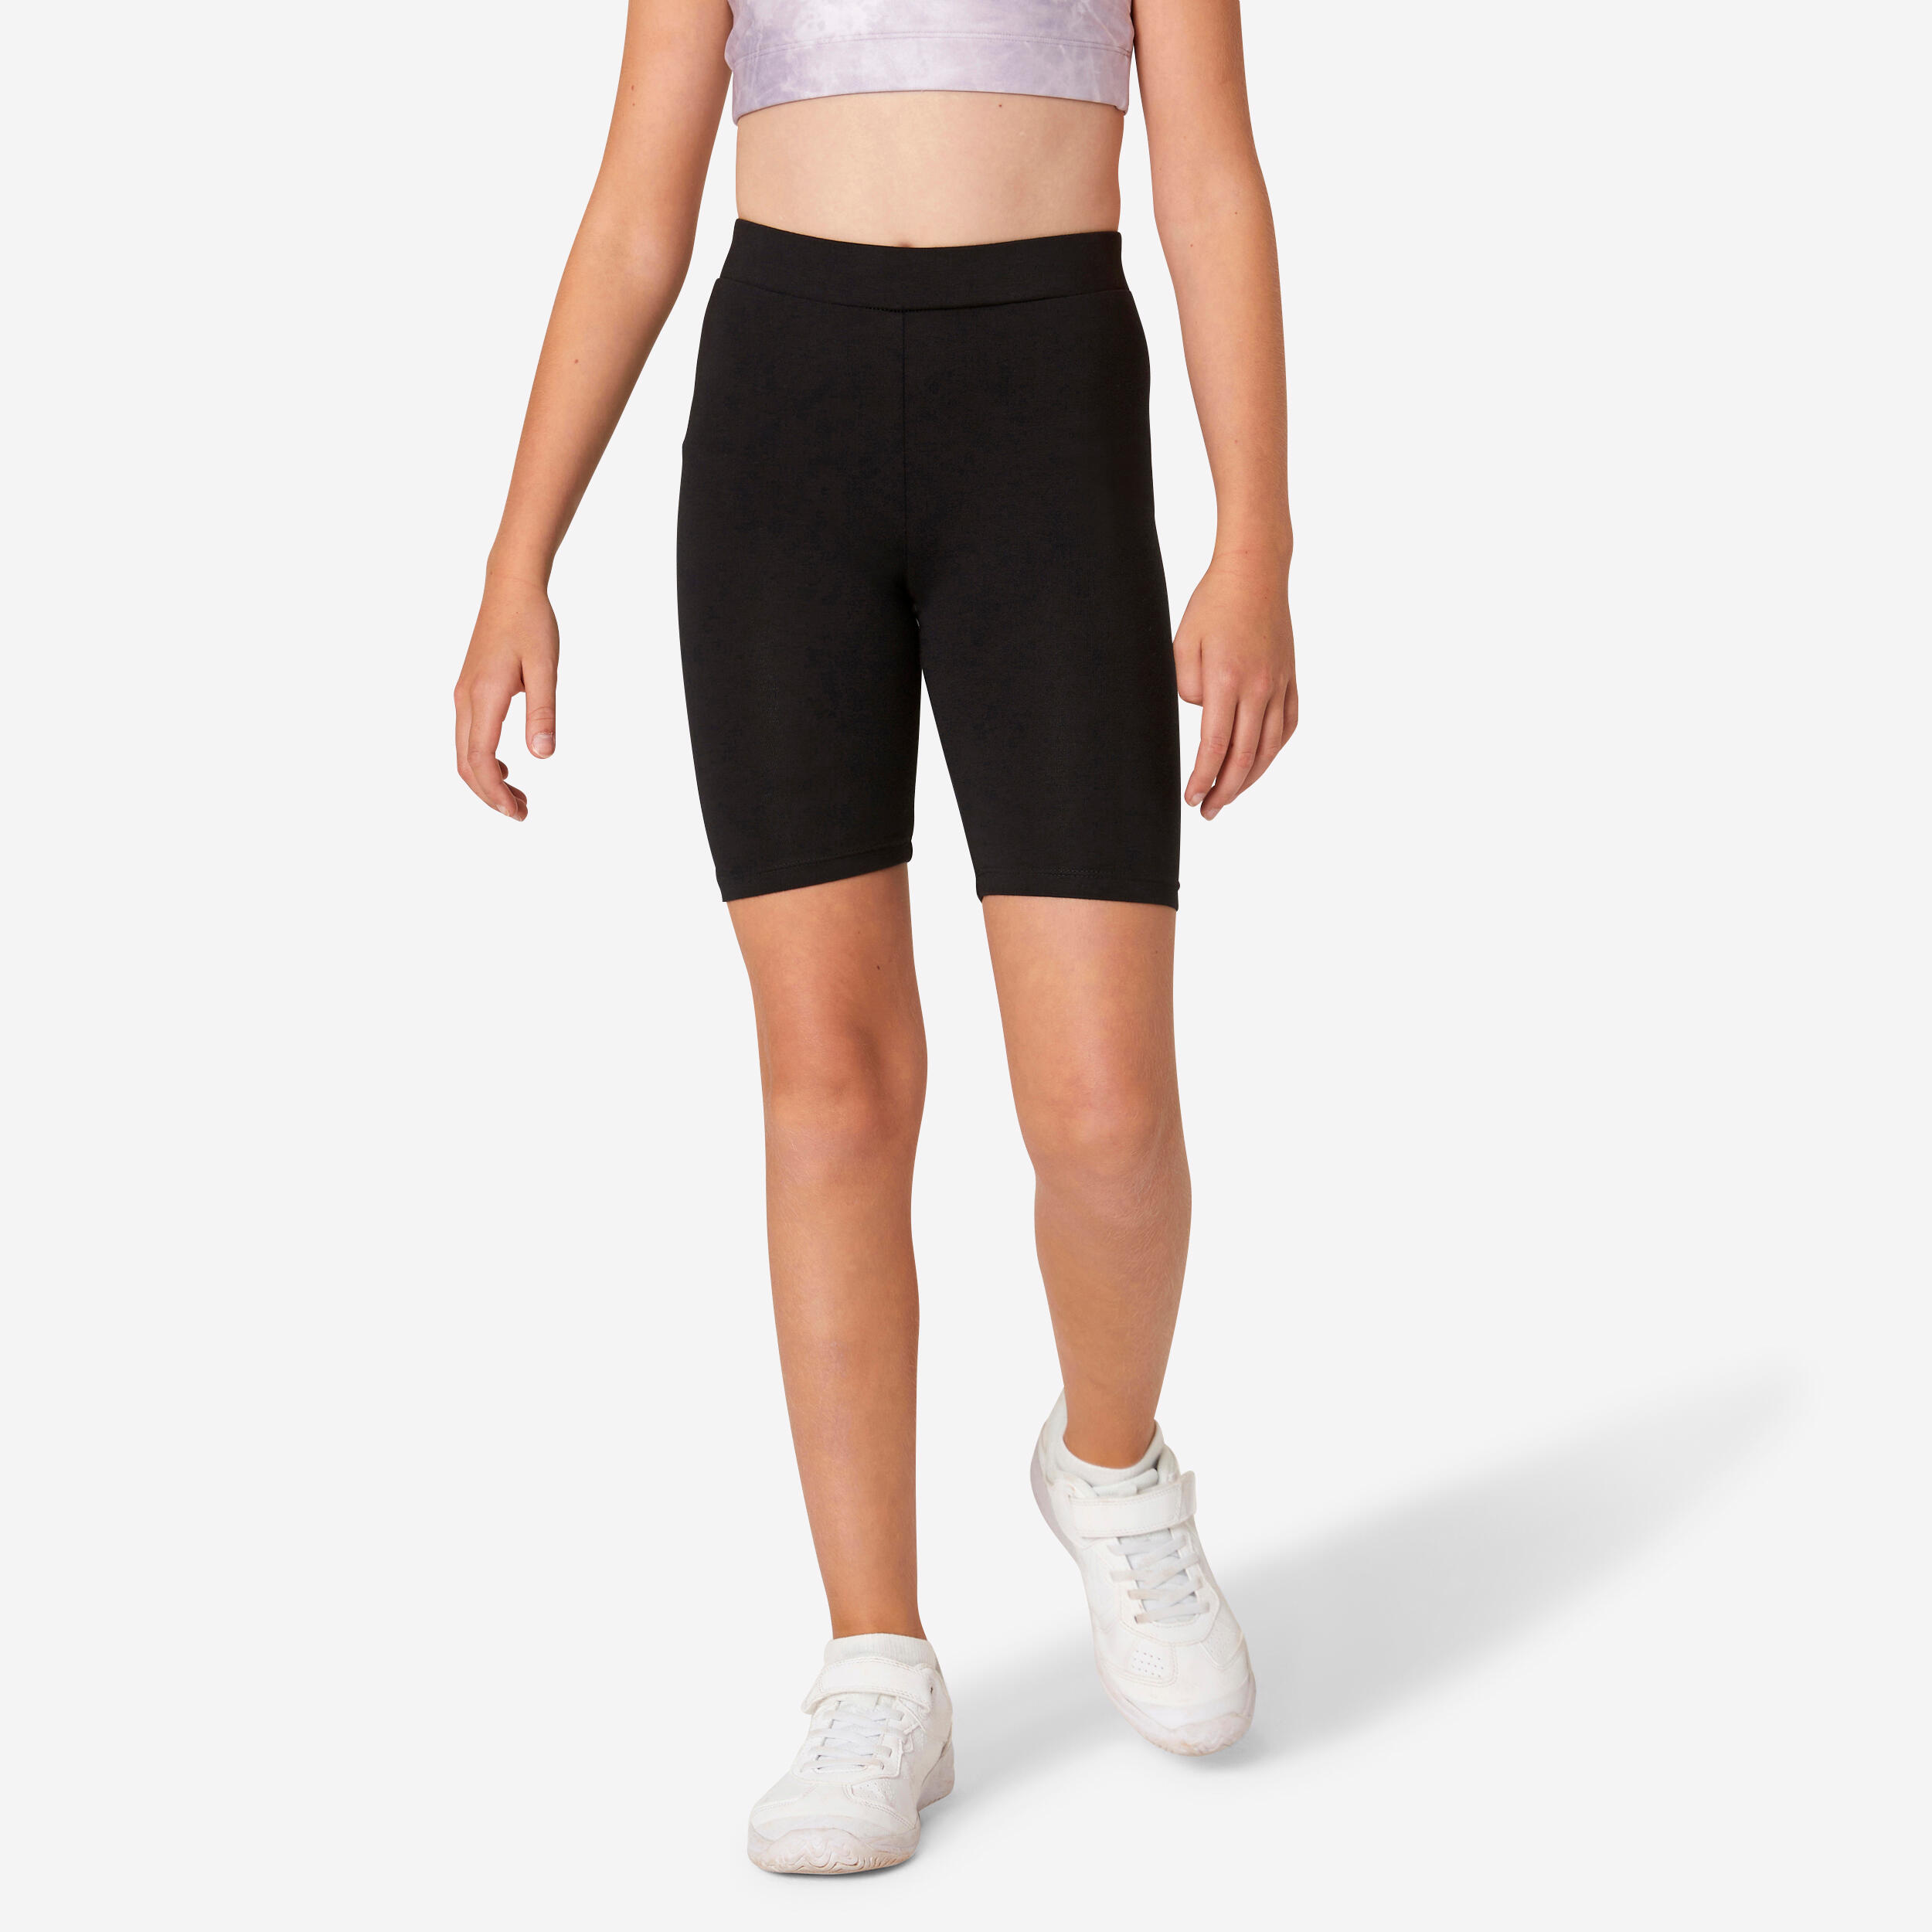 STRETCH IS COMFORT Women's Plus Size Cotton Biker Shorts